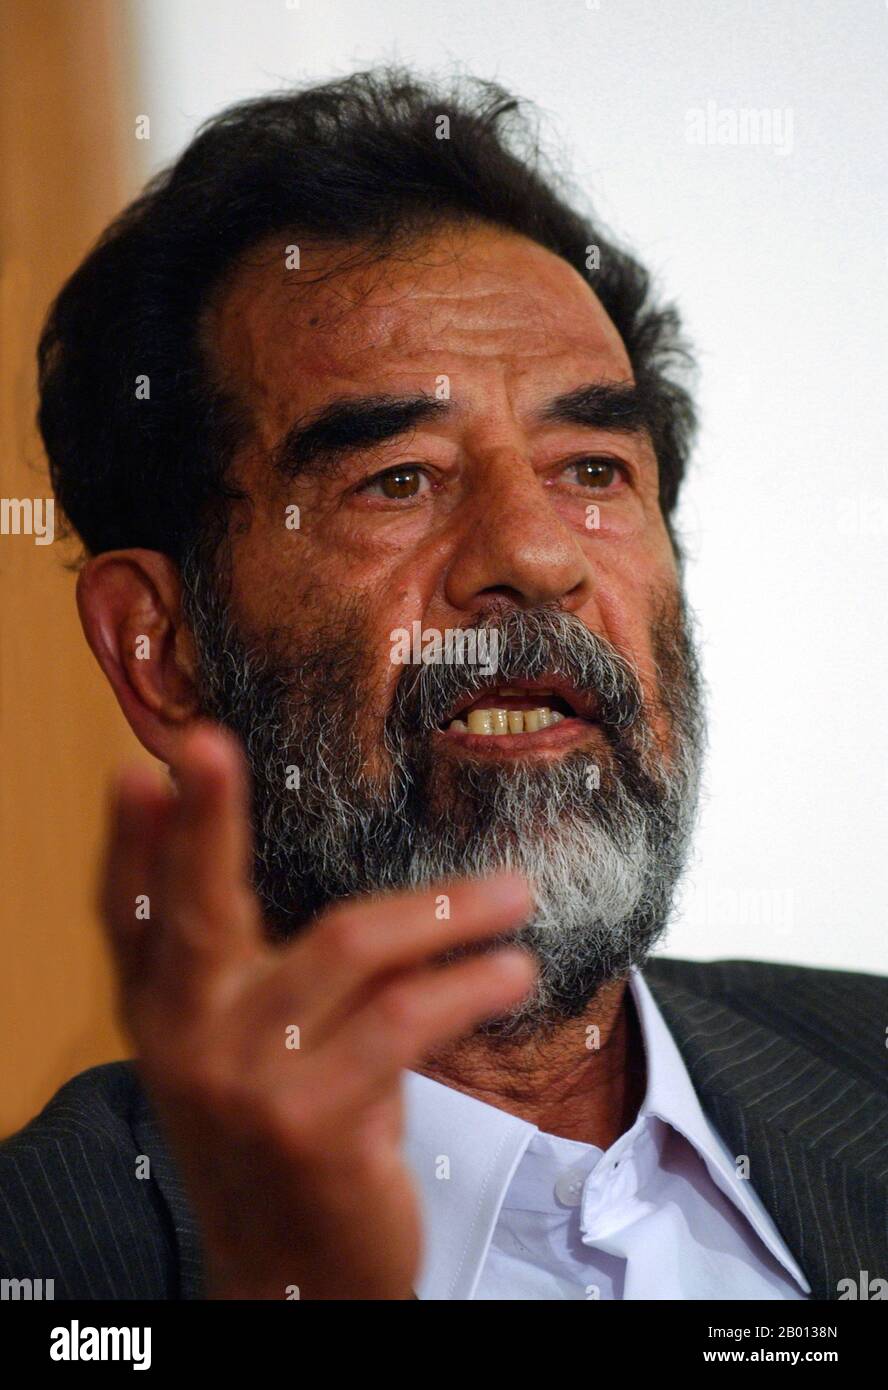 Iraq: Saddam Hussein, presidente dell Iraq (r. 1979-2003), parlando al suo processo, il 1° luglio 2004. Saddam Hussein Abd al-Majid al-Tikriti (28 aprile 1937 – 30 dicembre 2006) è stato il presidente dell'Iraq. Leader del Partito rivoluzionario Ba'ath, che sposò un mix di nazionalismo arabo e socialismo arabo, Saddam ha giocato un ruolo chiave nel colpo di stato del 1968 che ha portato il partito al potere a lungo termine. Come presidente, Saddam ha mantenuto il potere durante la guerra Iran-Iraq del 1980 fino al 1988, e durante tutta la guerra del Golfo Persico del 1991. Fu deposto nel 2003 dagli Stati Uniti e giustiziato il 30 dicembre 2006. Foto Stock